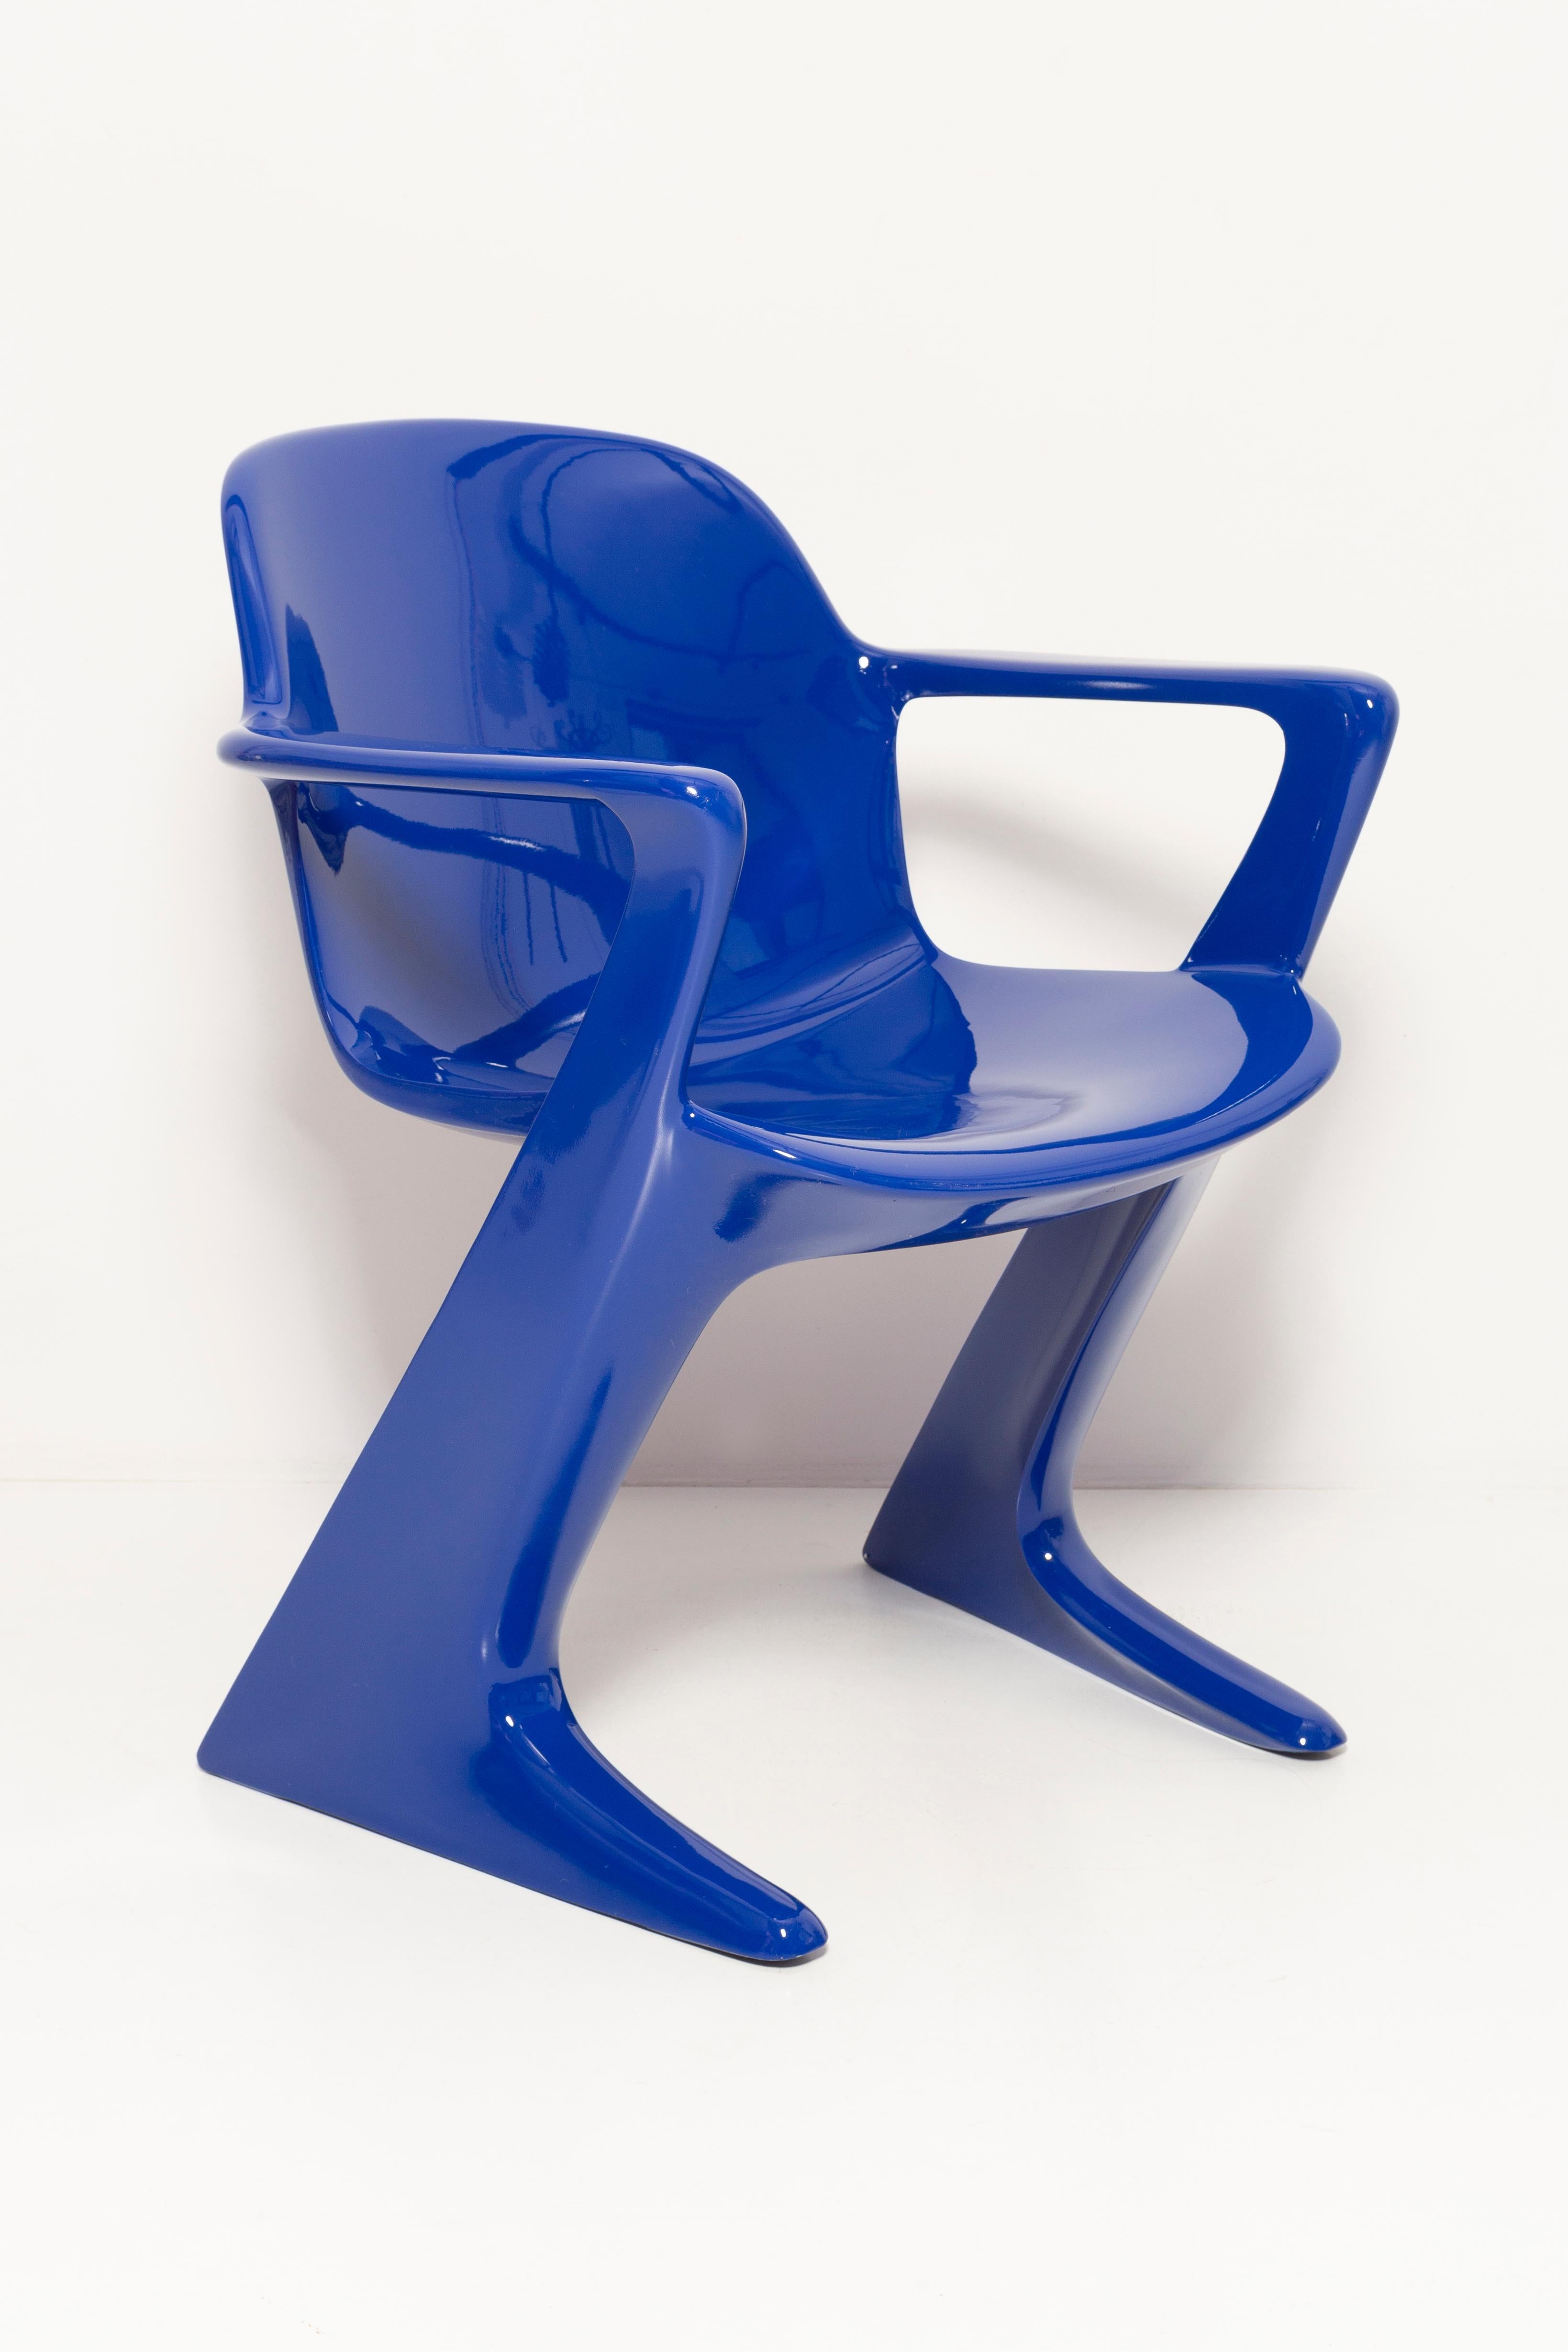 ultramarines chair